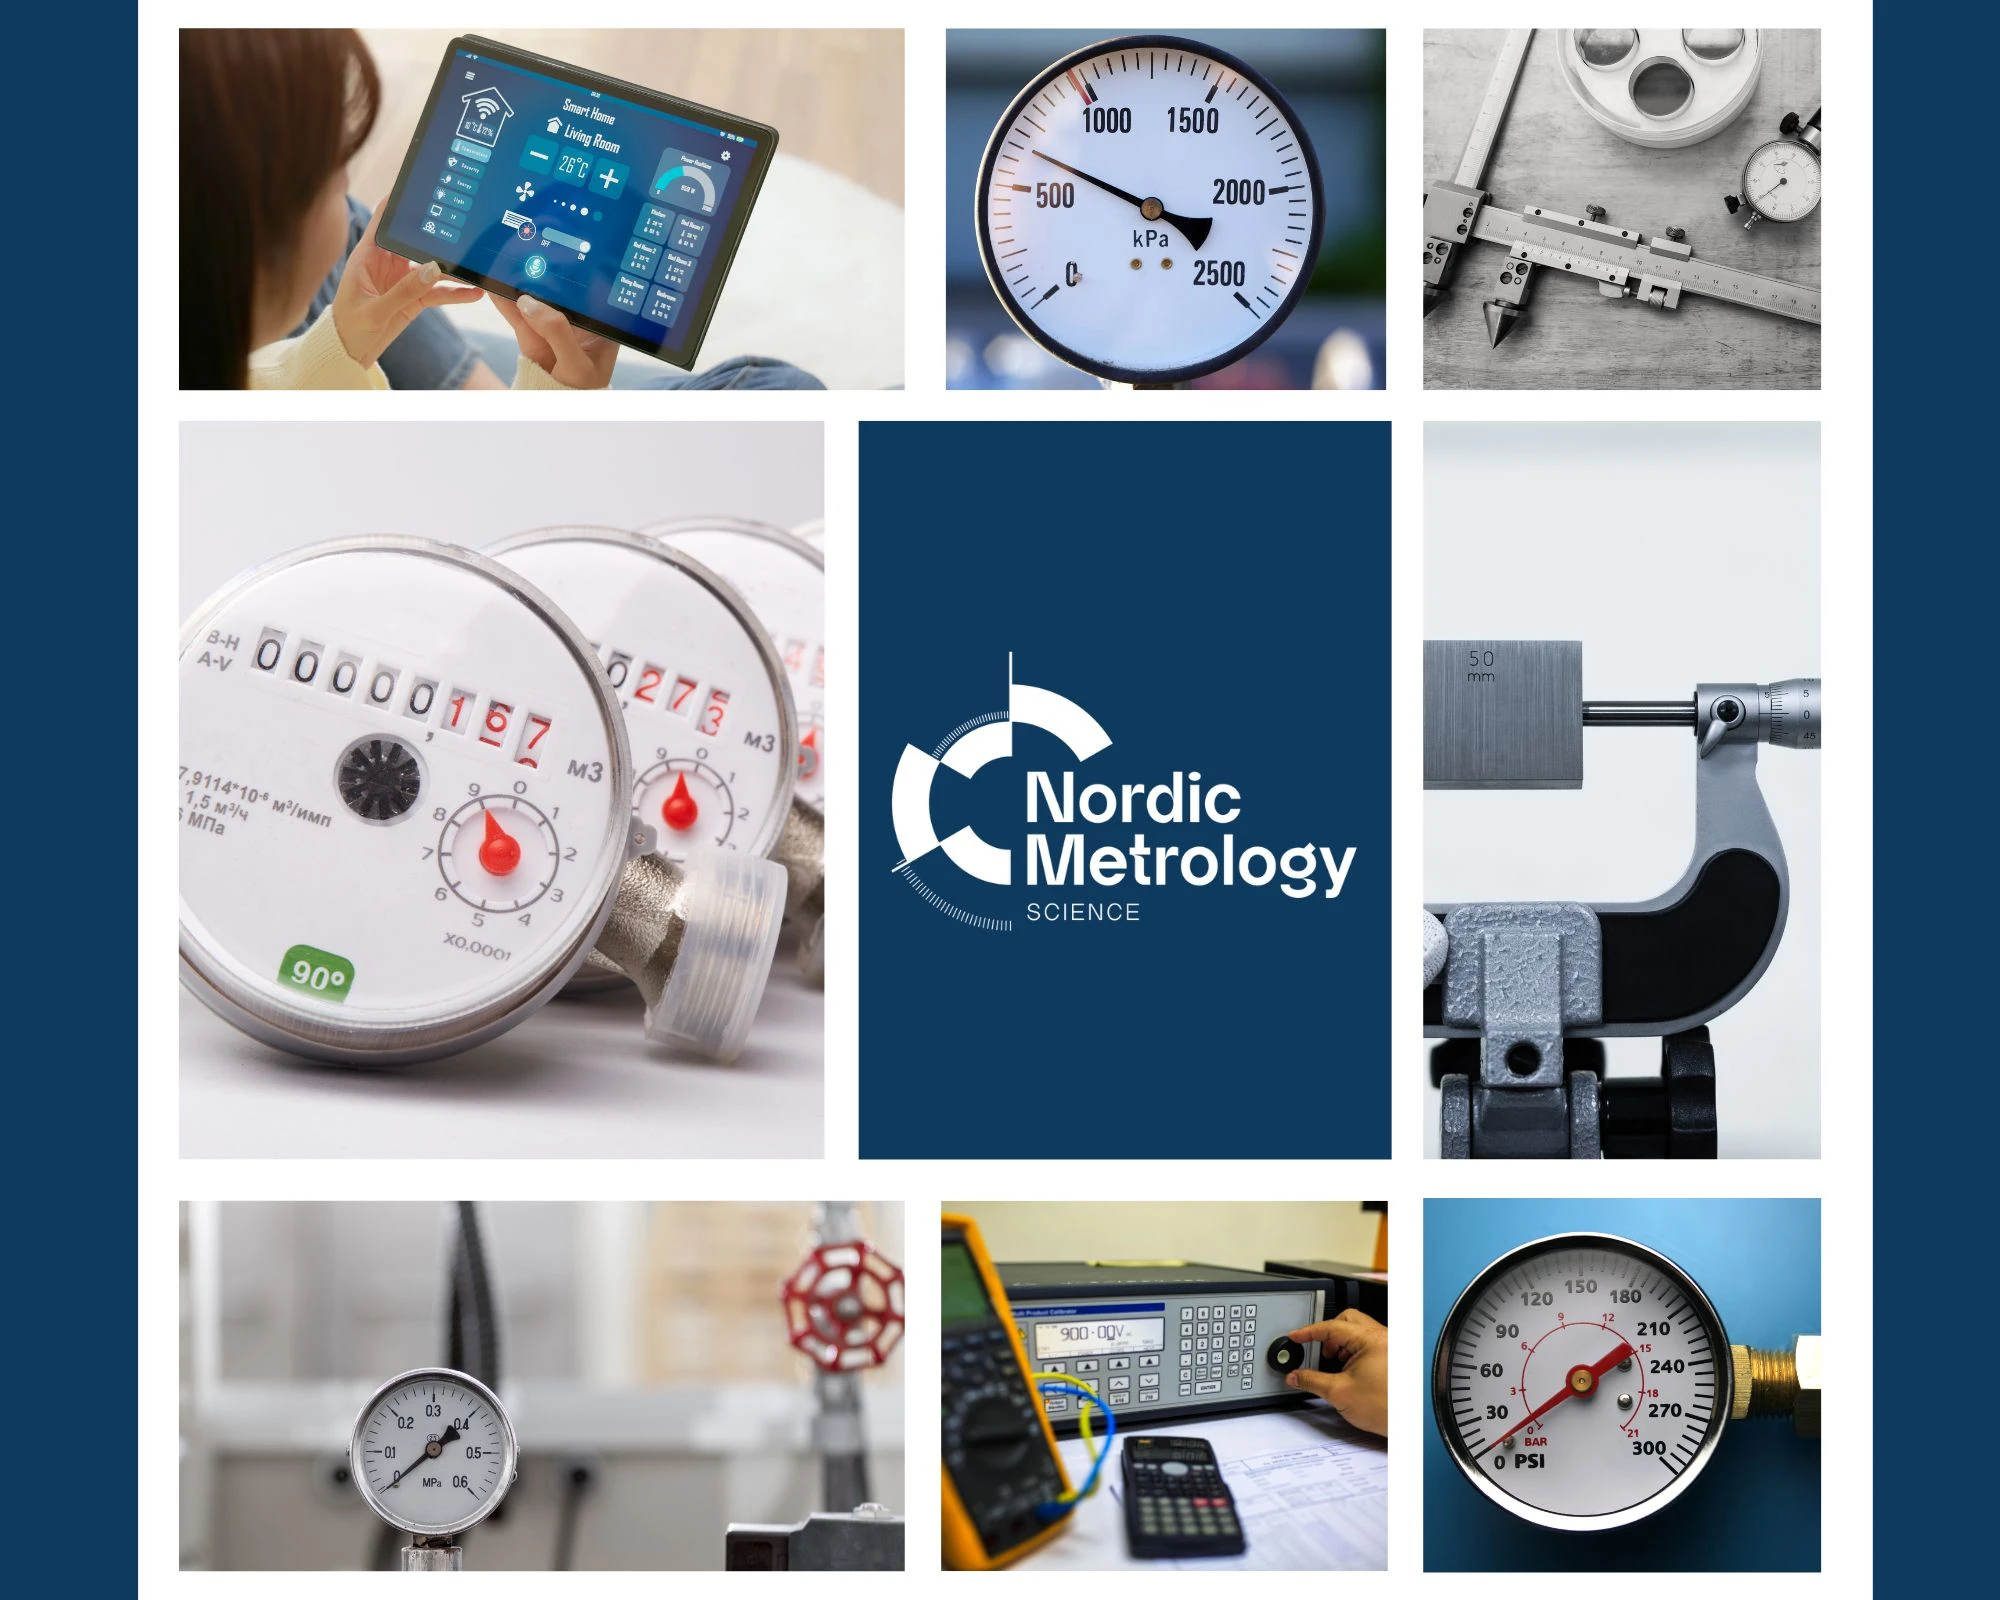 Nordic Metrology Science|